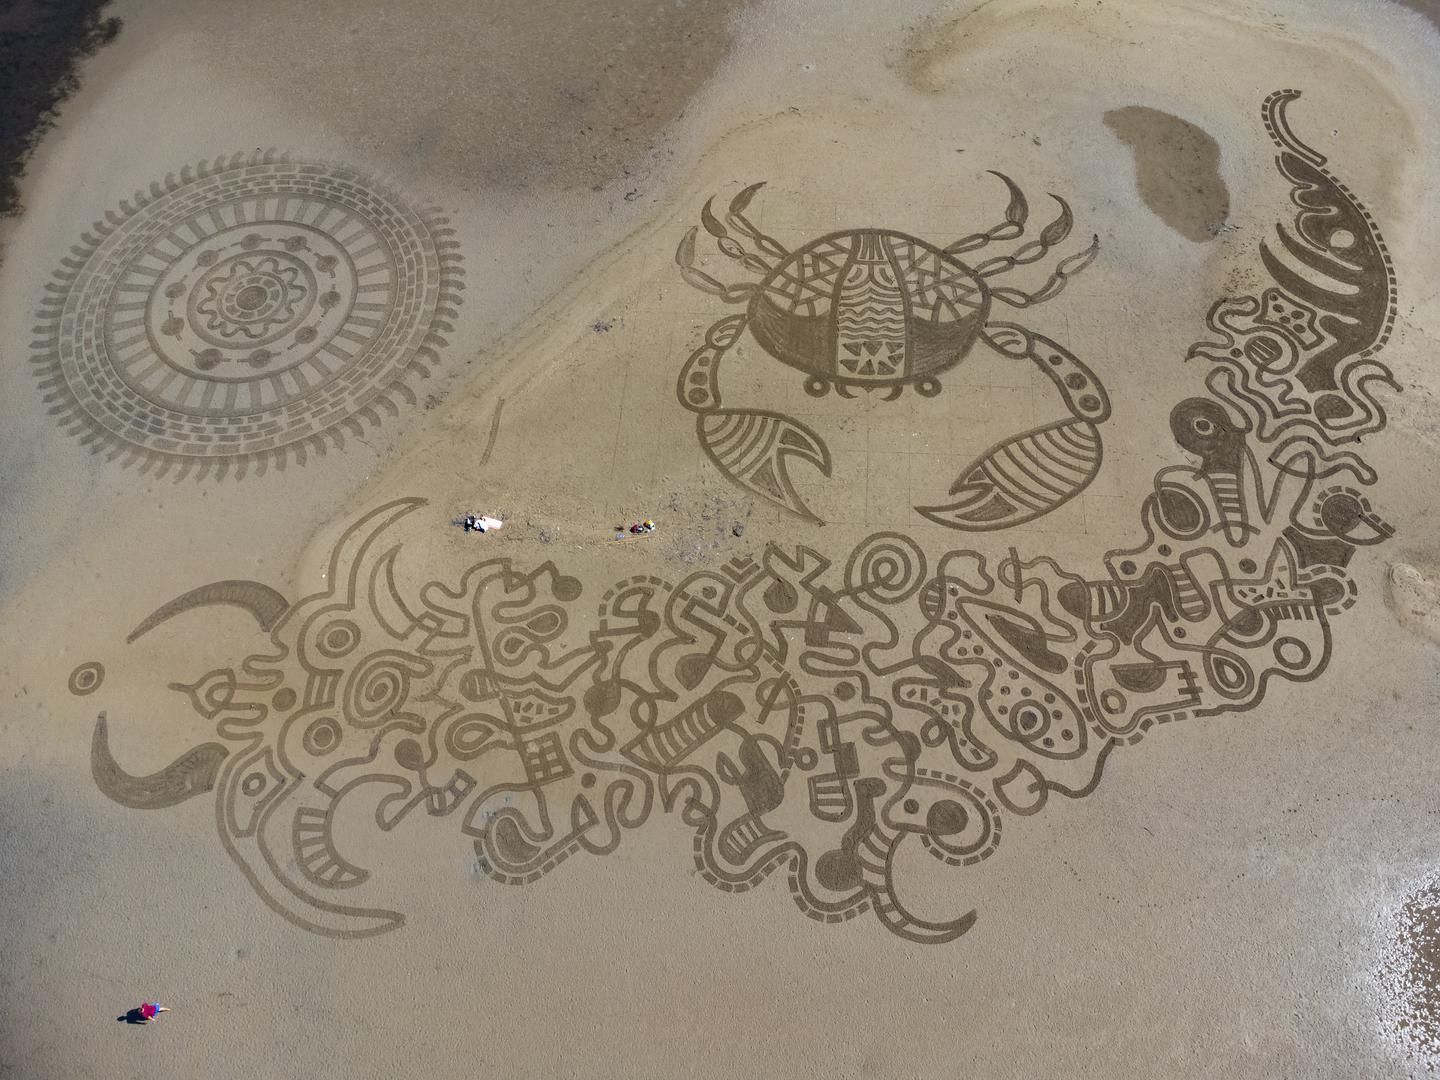 16.09.2023., Usce Neretve - Pogled iz zraka na usce Neretve na kojem je poceo 3. Sand art festival, festival umjetnosti na pijesku. Photo: Grgo Jelavic/PIXSELL